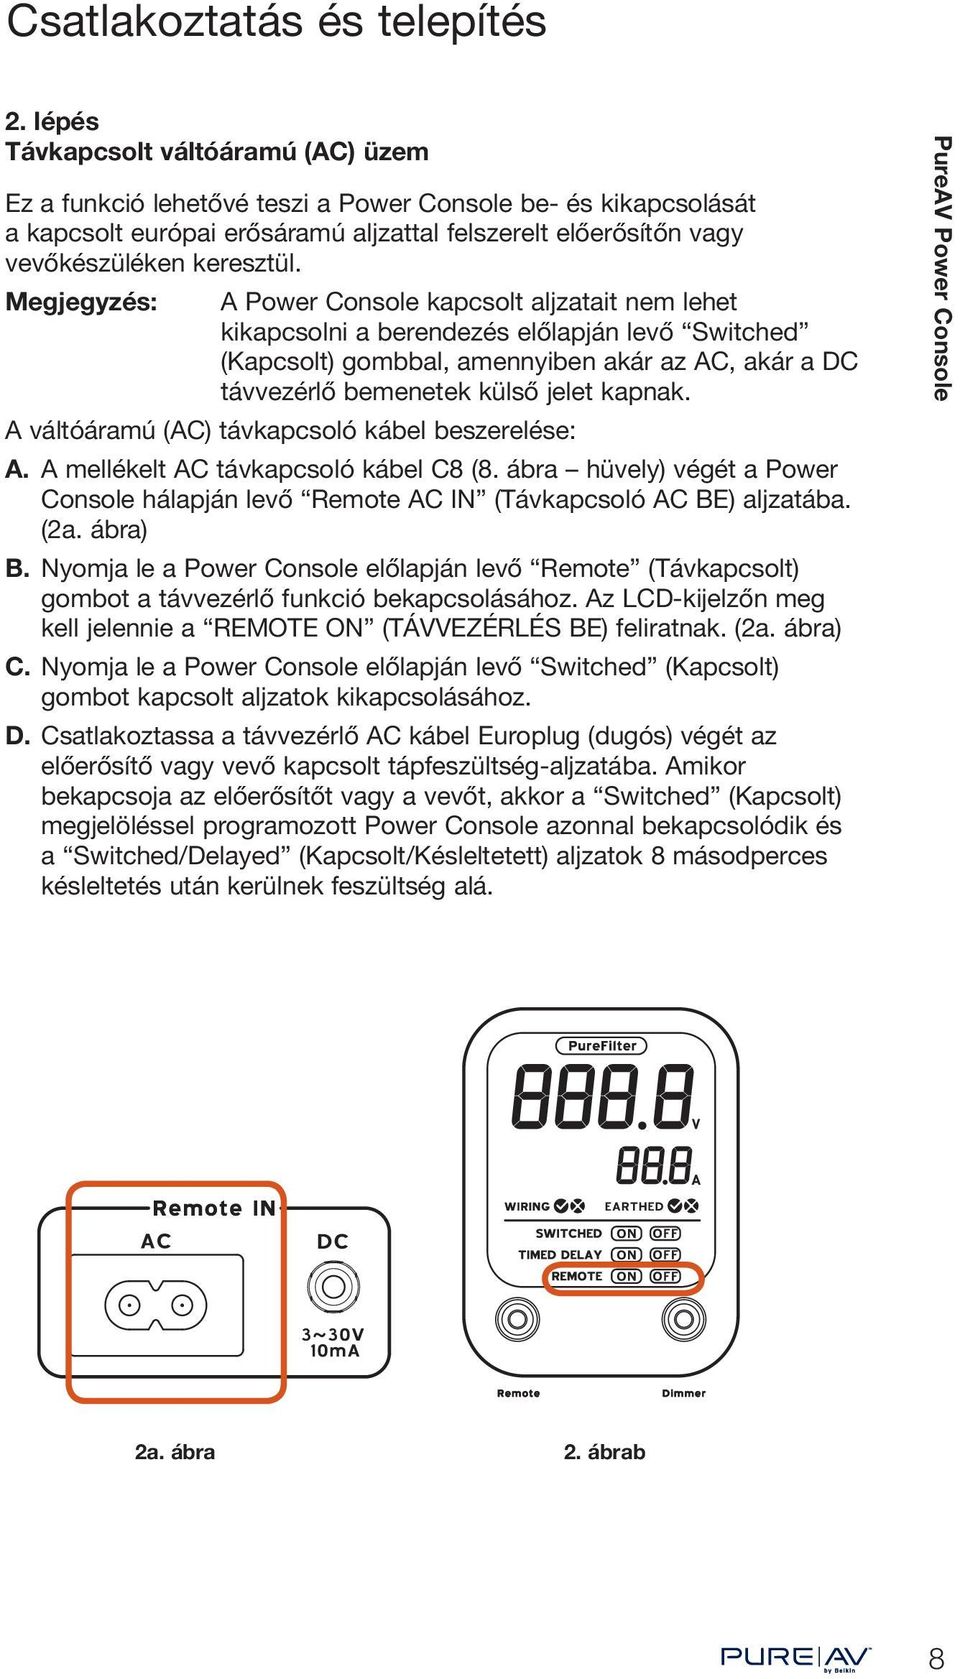 Megjegyzés: A Power Console kapcsolt aljzatait nem lehet kikapcsolni a berendezés előlapján levő Switched (Kapcsolt) gombbal, amennyiben akár az AC, akár a DC távvezérlő bemenetek külső jelet kapnak.